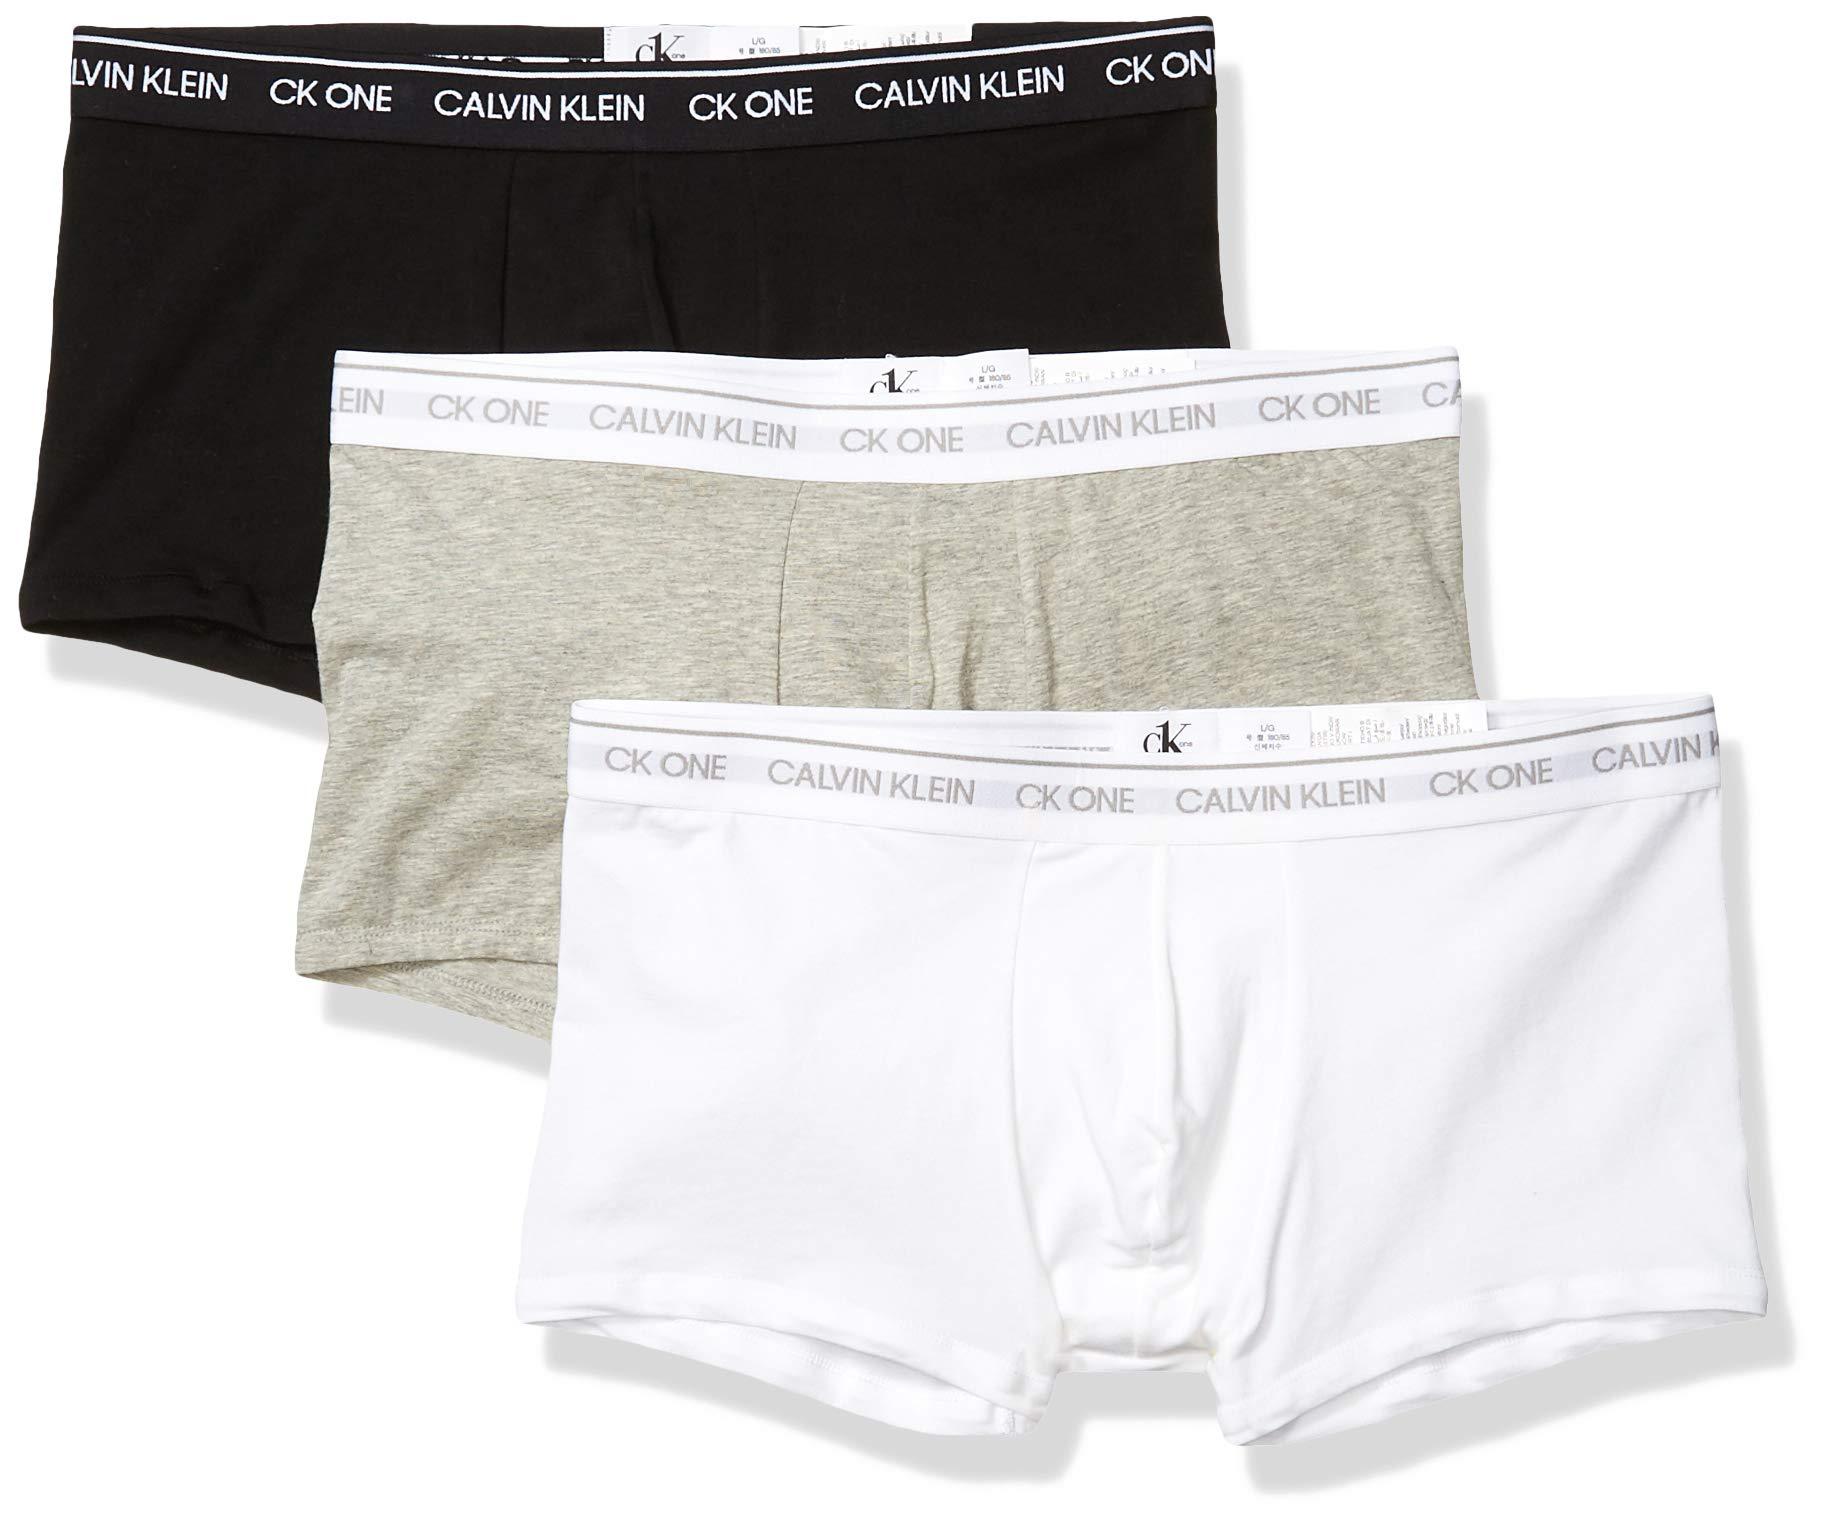 Calvin Klein Underwear Ck One Cotton Low Rise Trunks in Black/Grey  Heather/White (White) for Men - Lyst